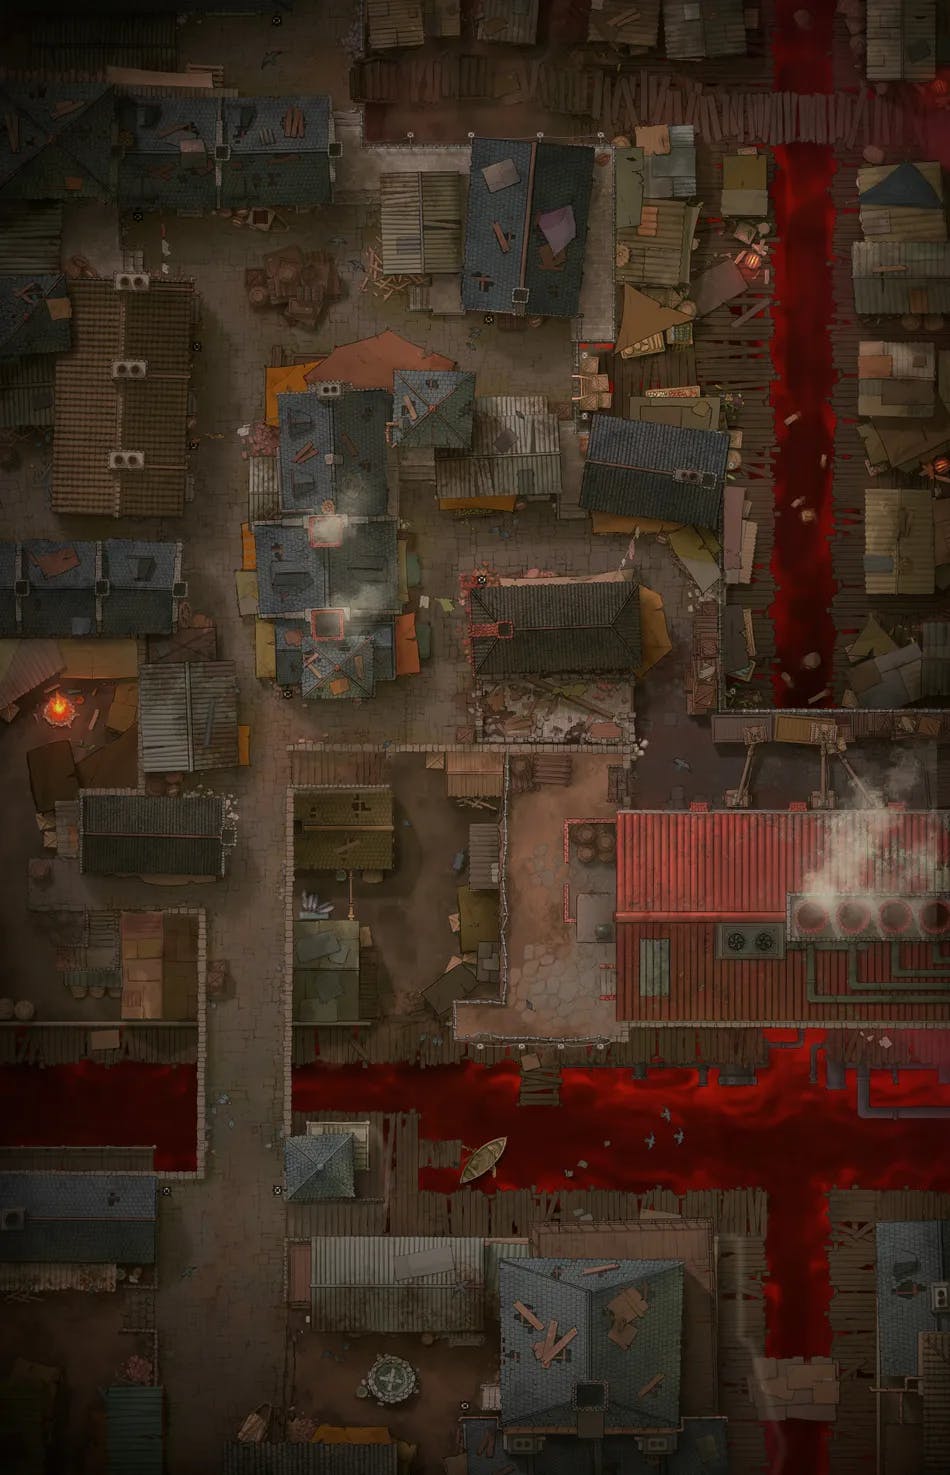 Slum District map, Blood River variant thumbnail